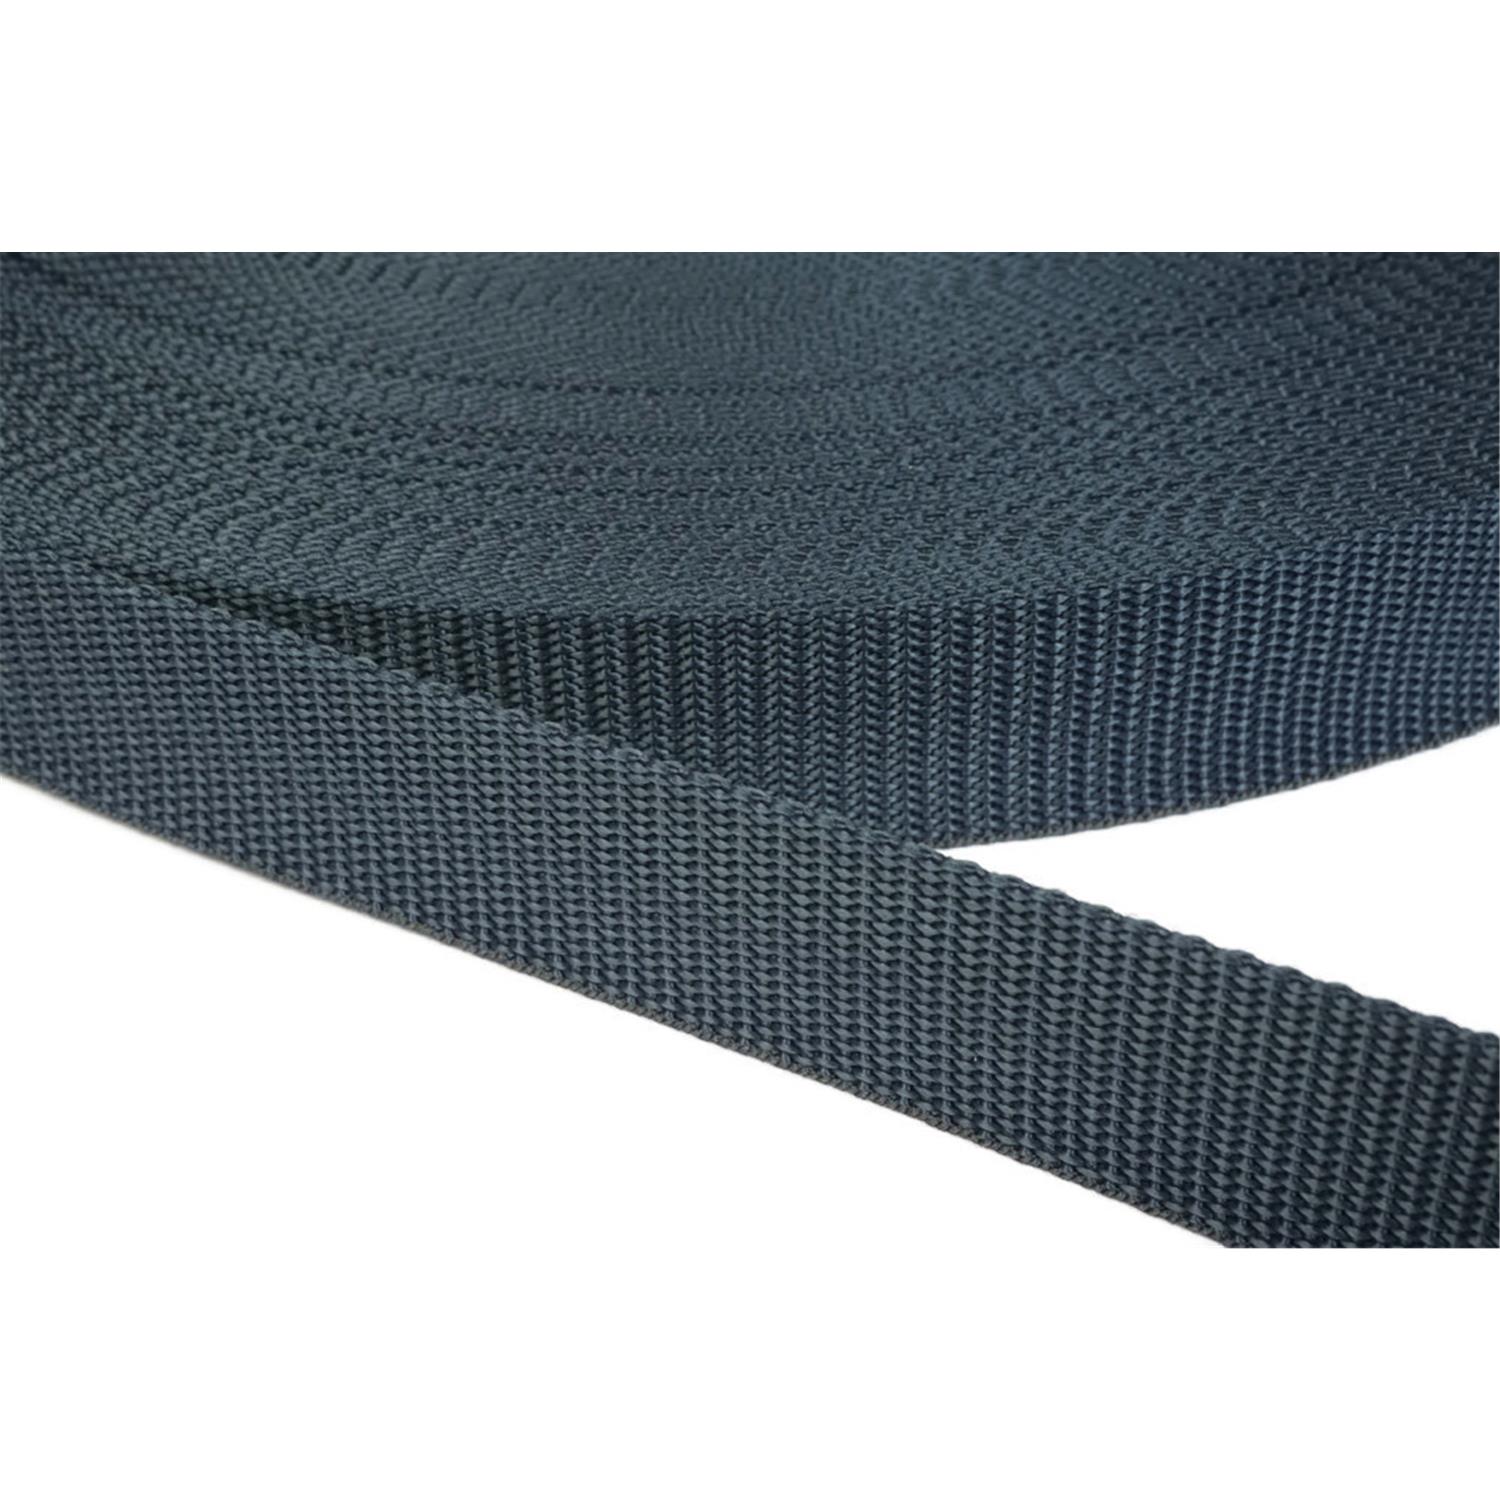 Gurtband 40mm breit aus Polypropylen in 41 Farben 40 - dunkelgrau/blau 50 Meter